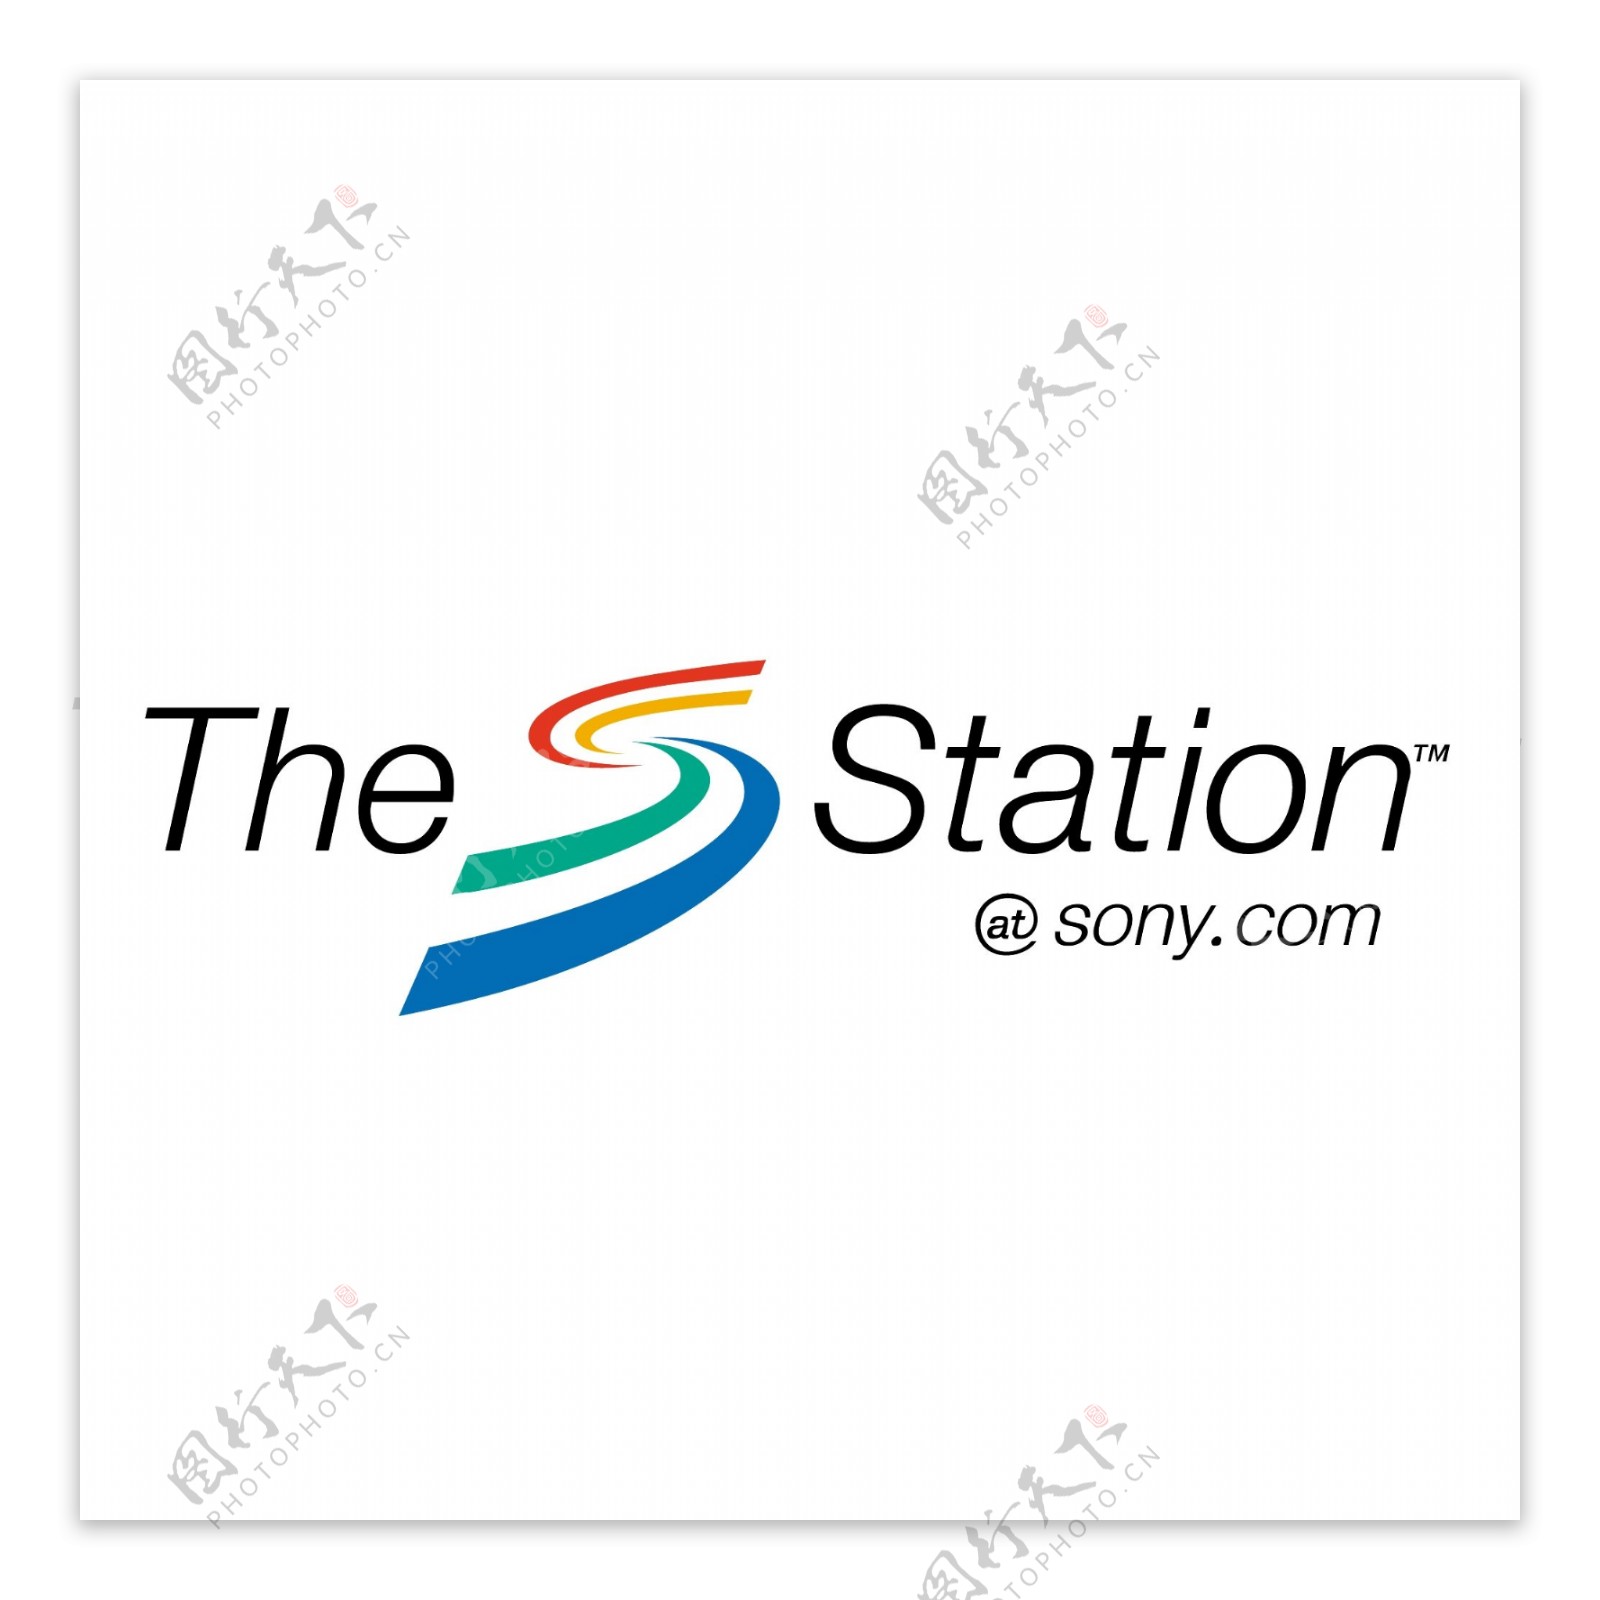 车站